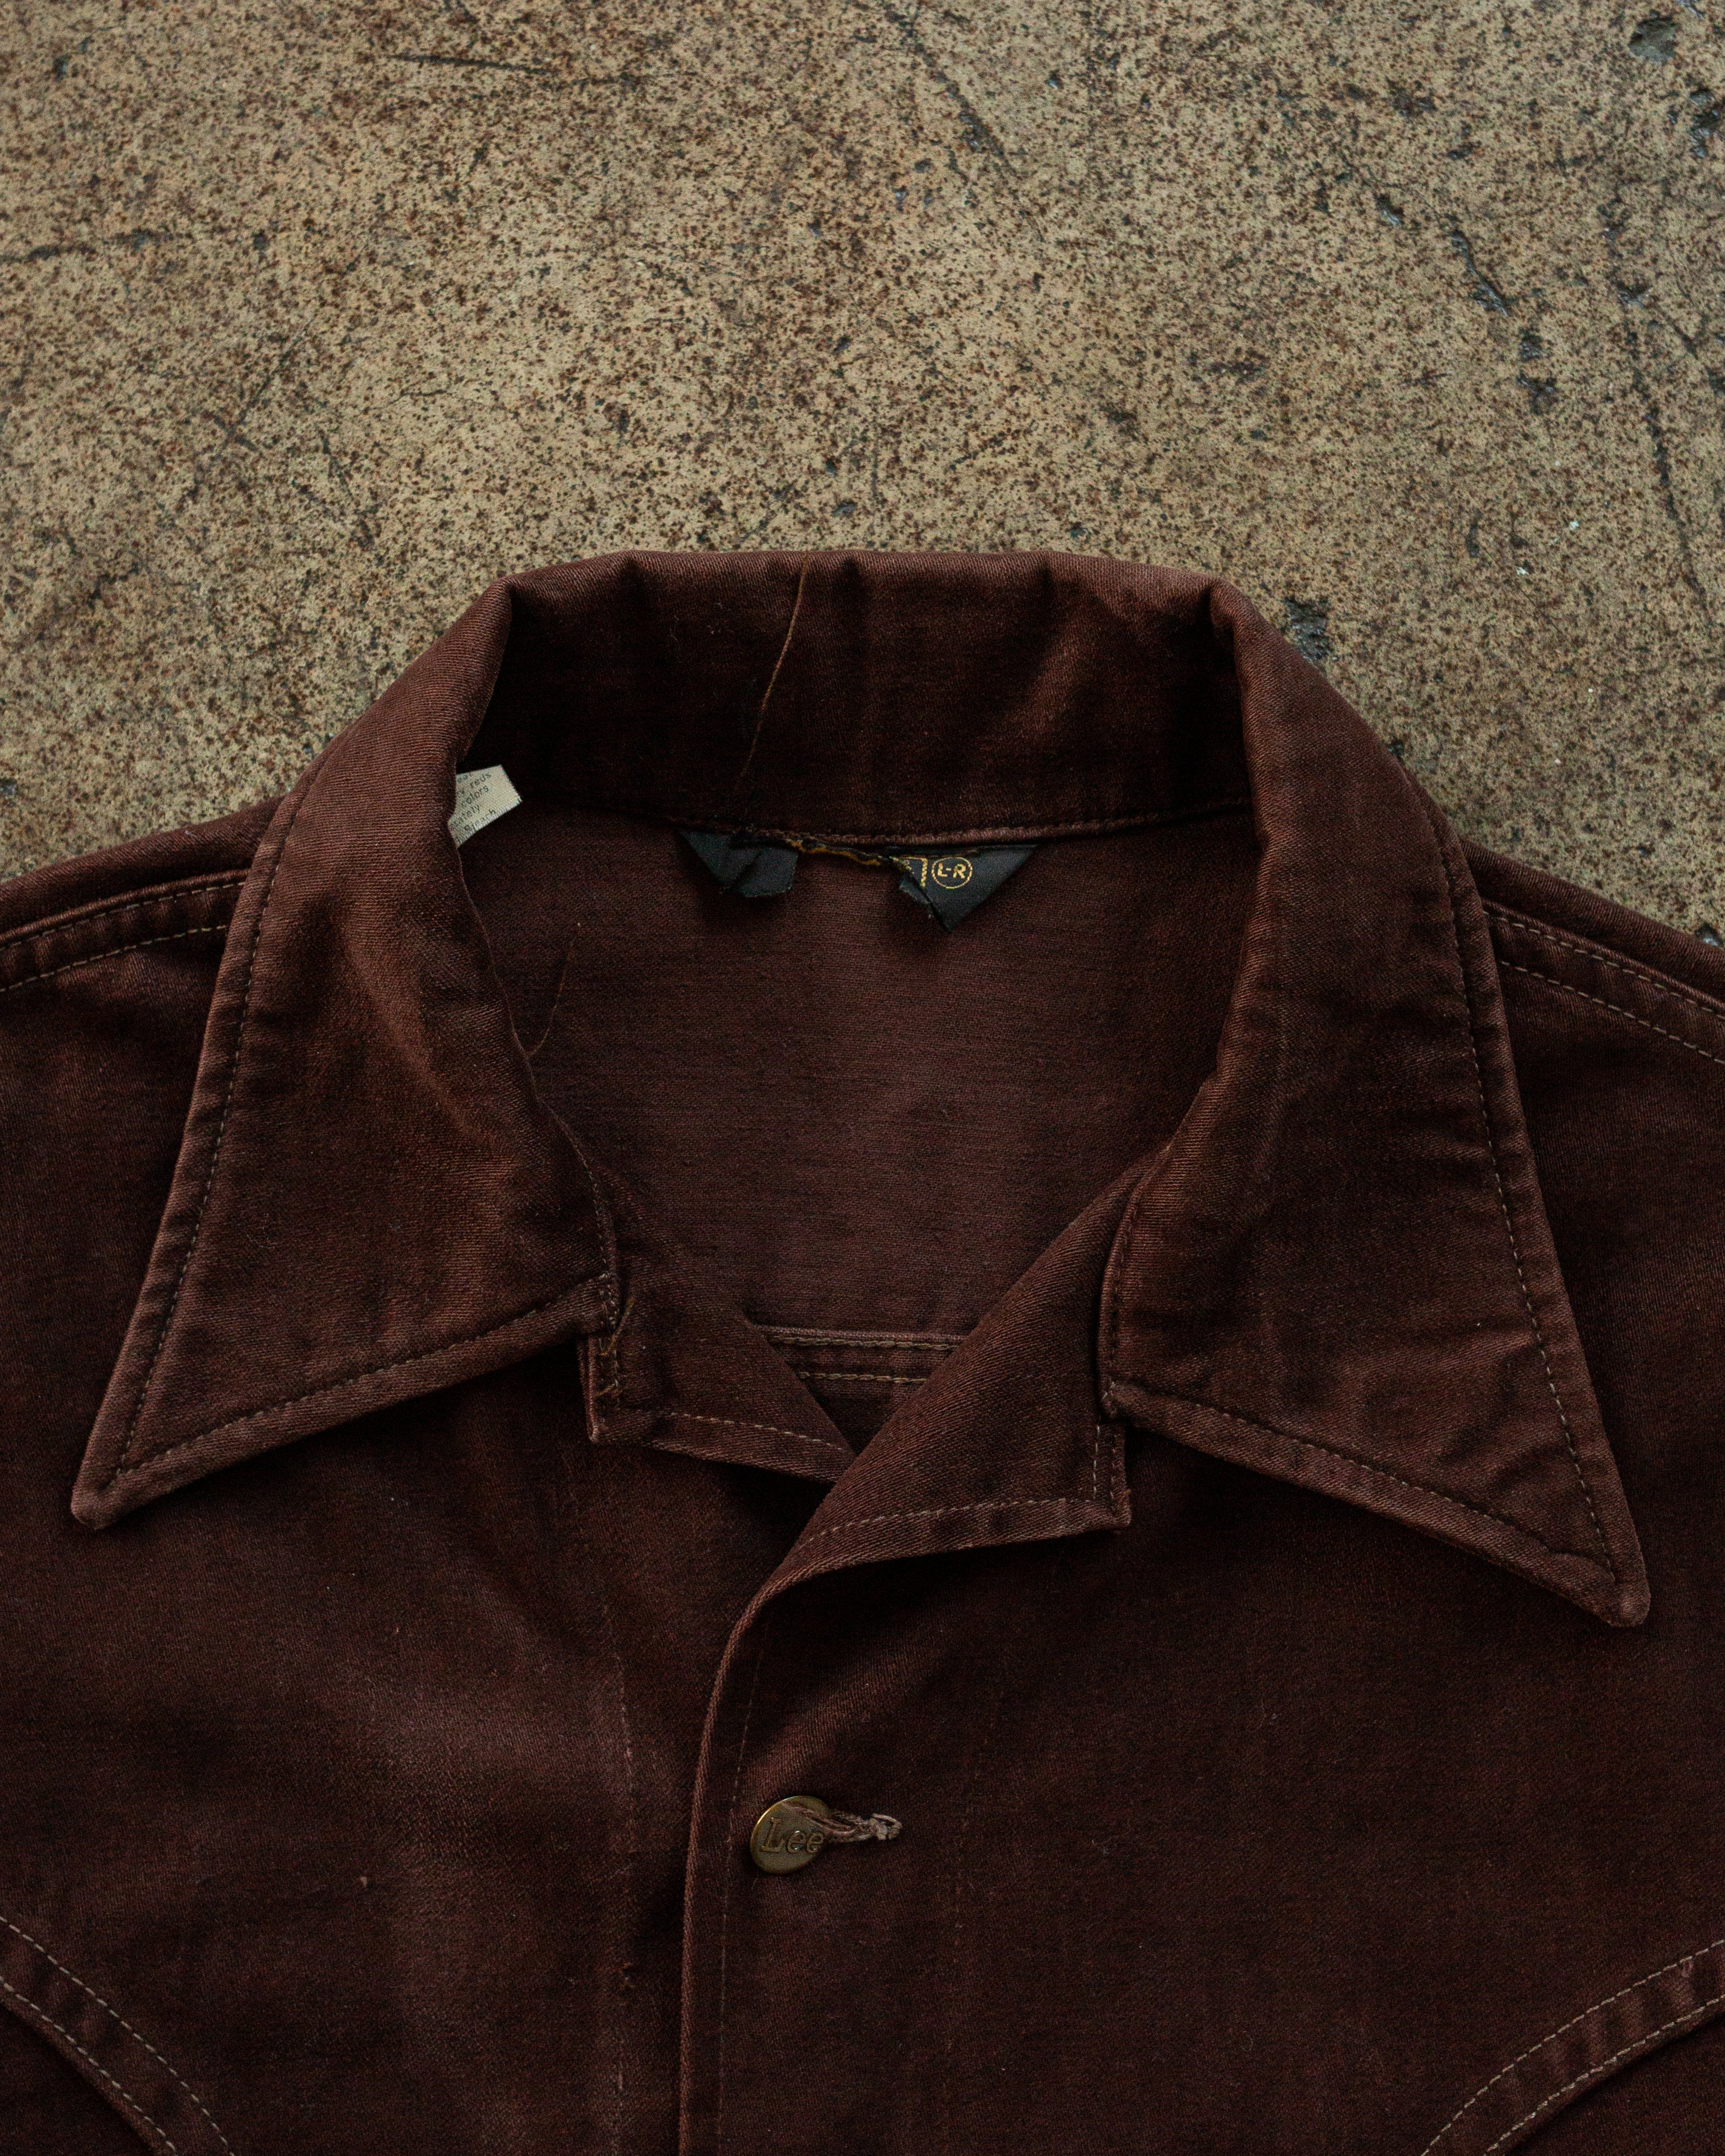 Lee Brown Western Moleskin Jacket - 1970s – UNSOUND RAGS